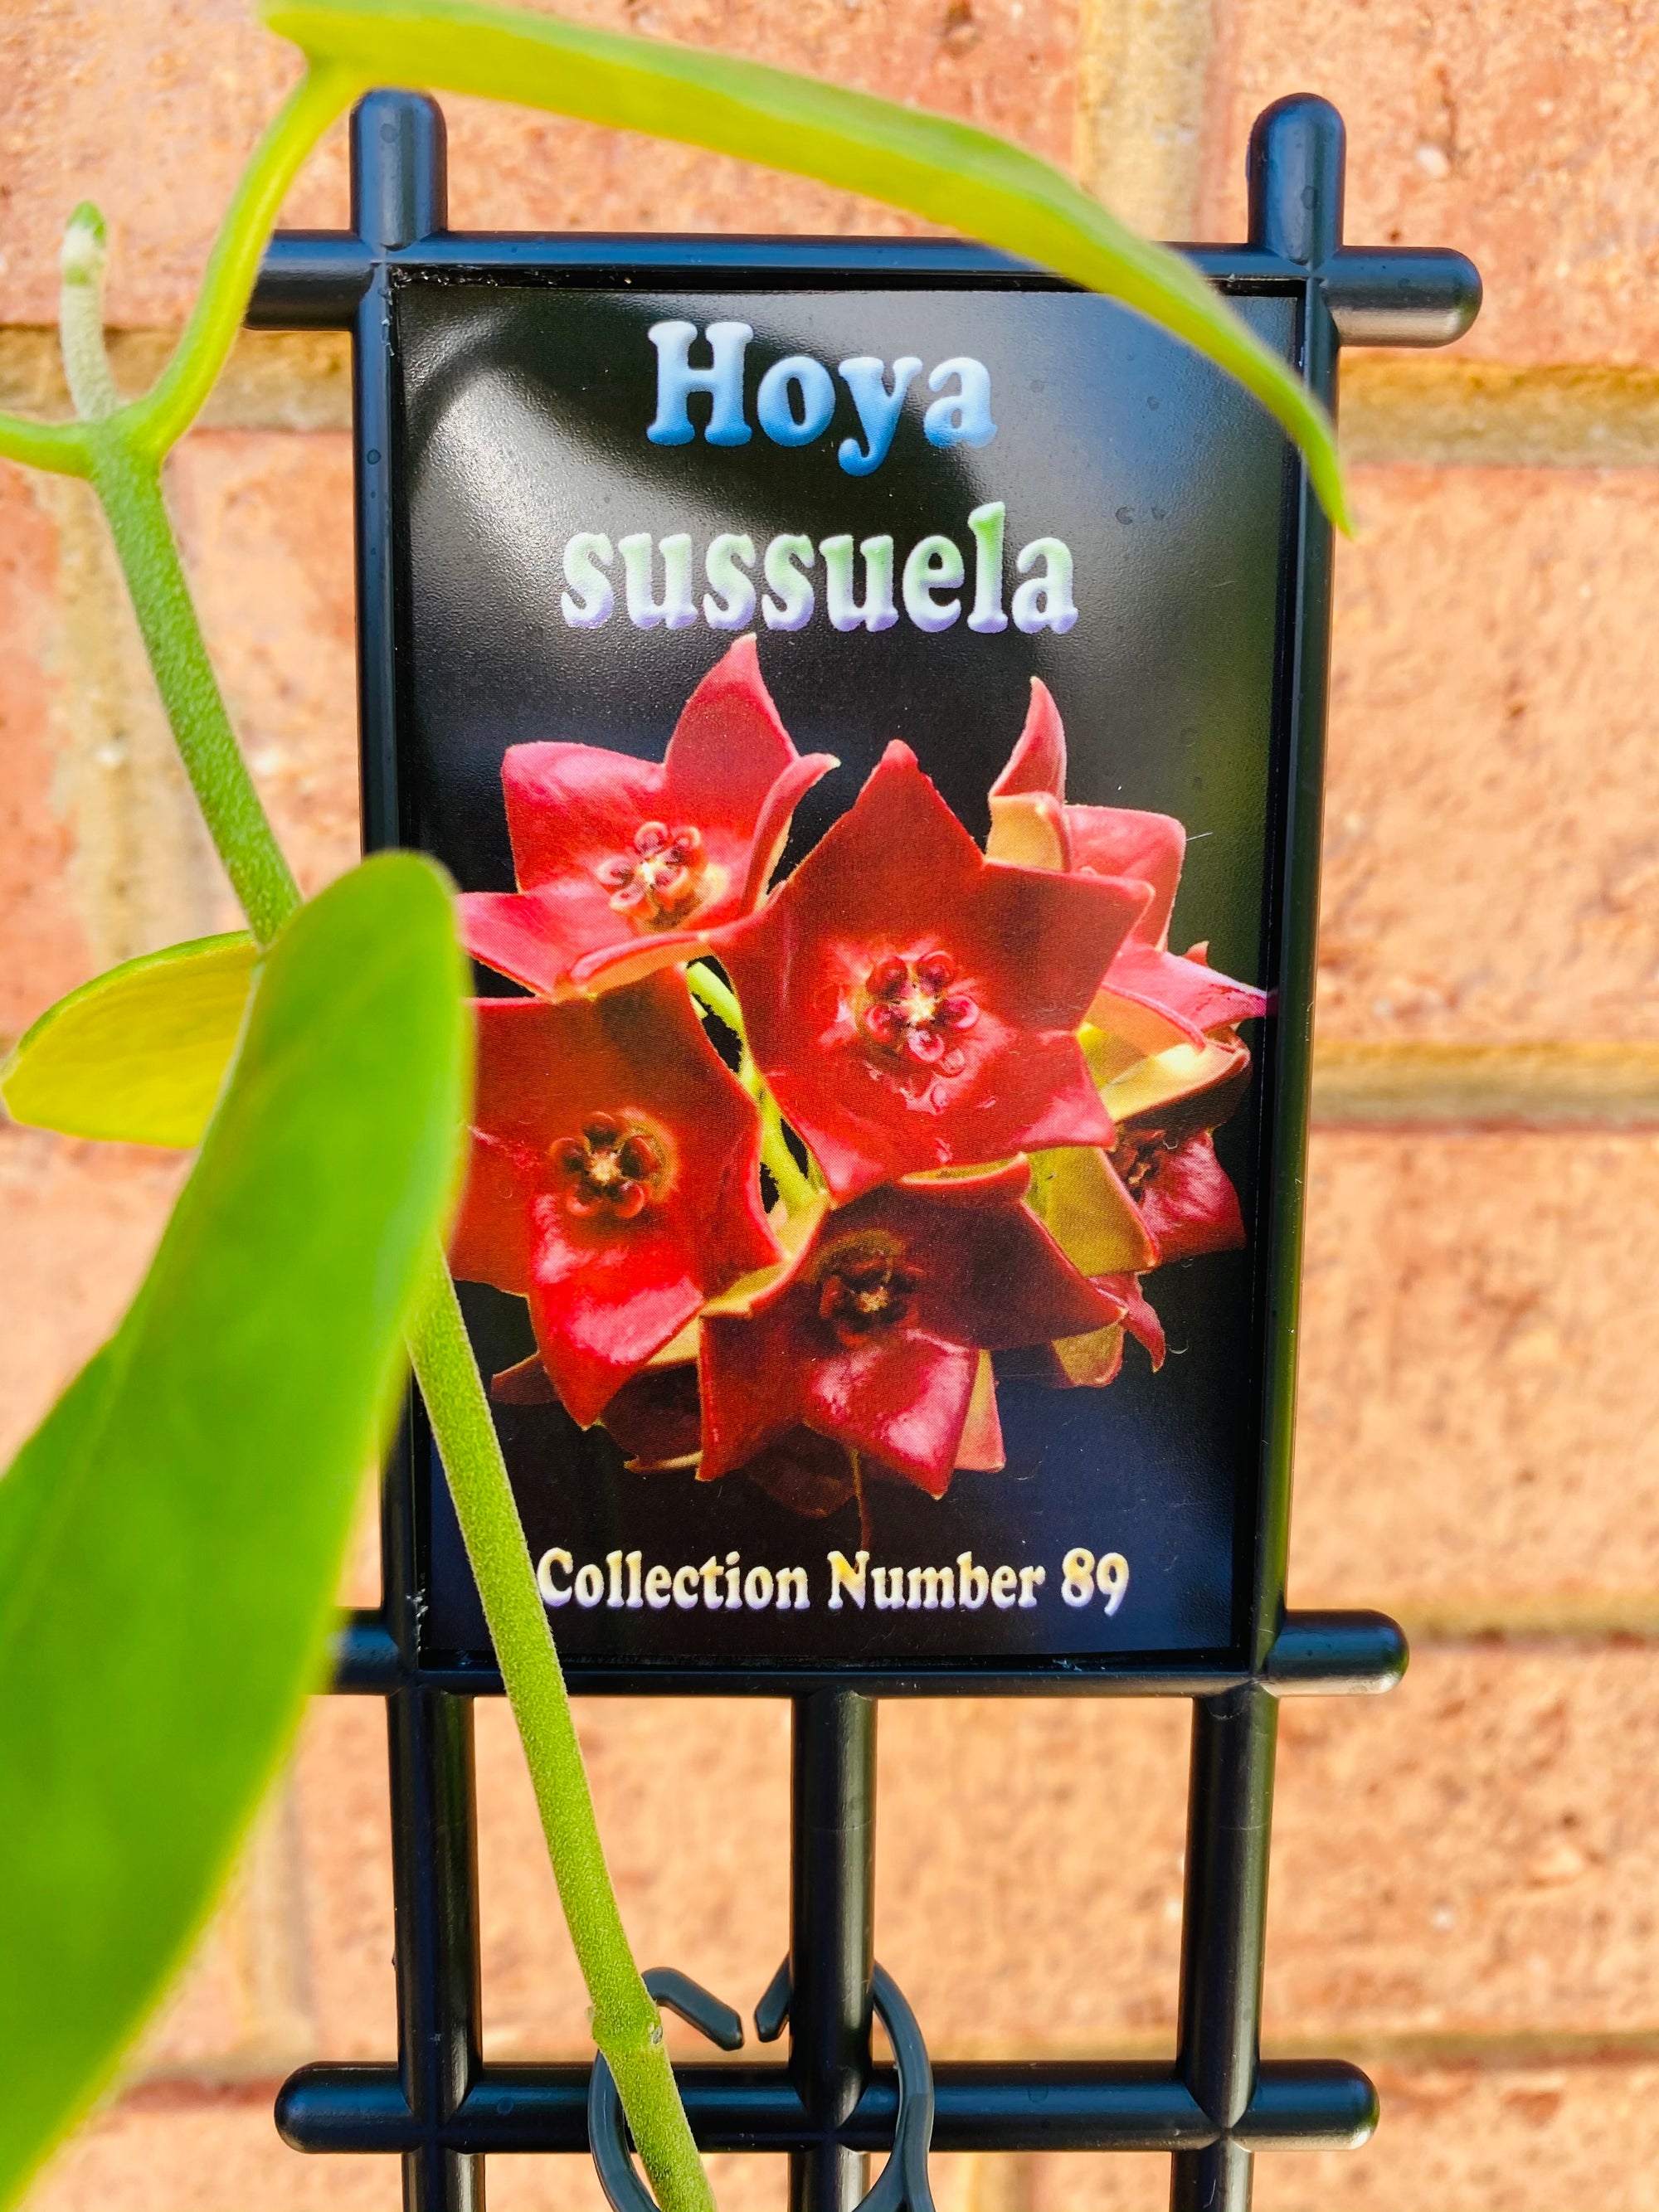 Hoya - Sussuela Collection No. 89